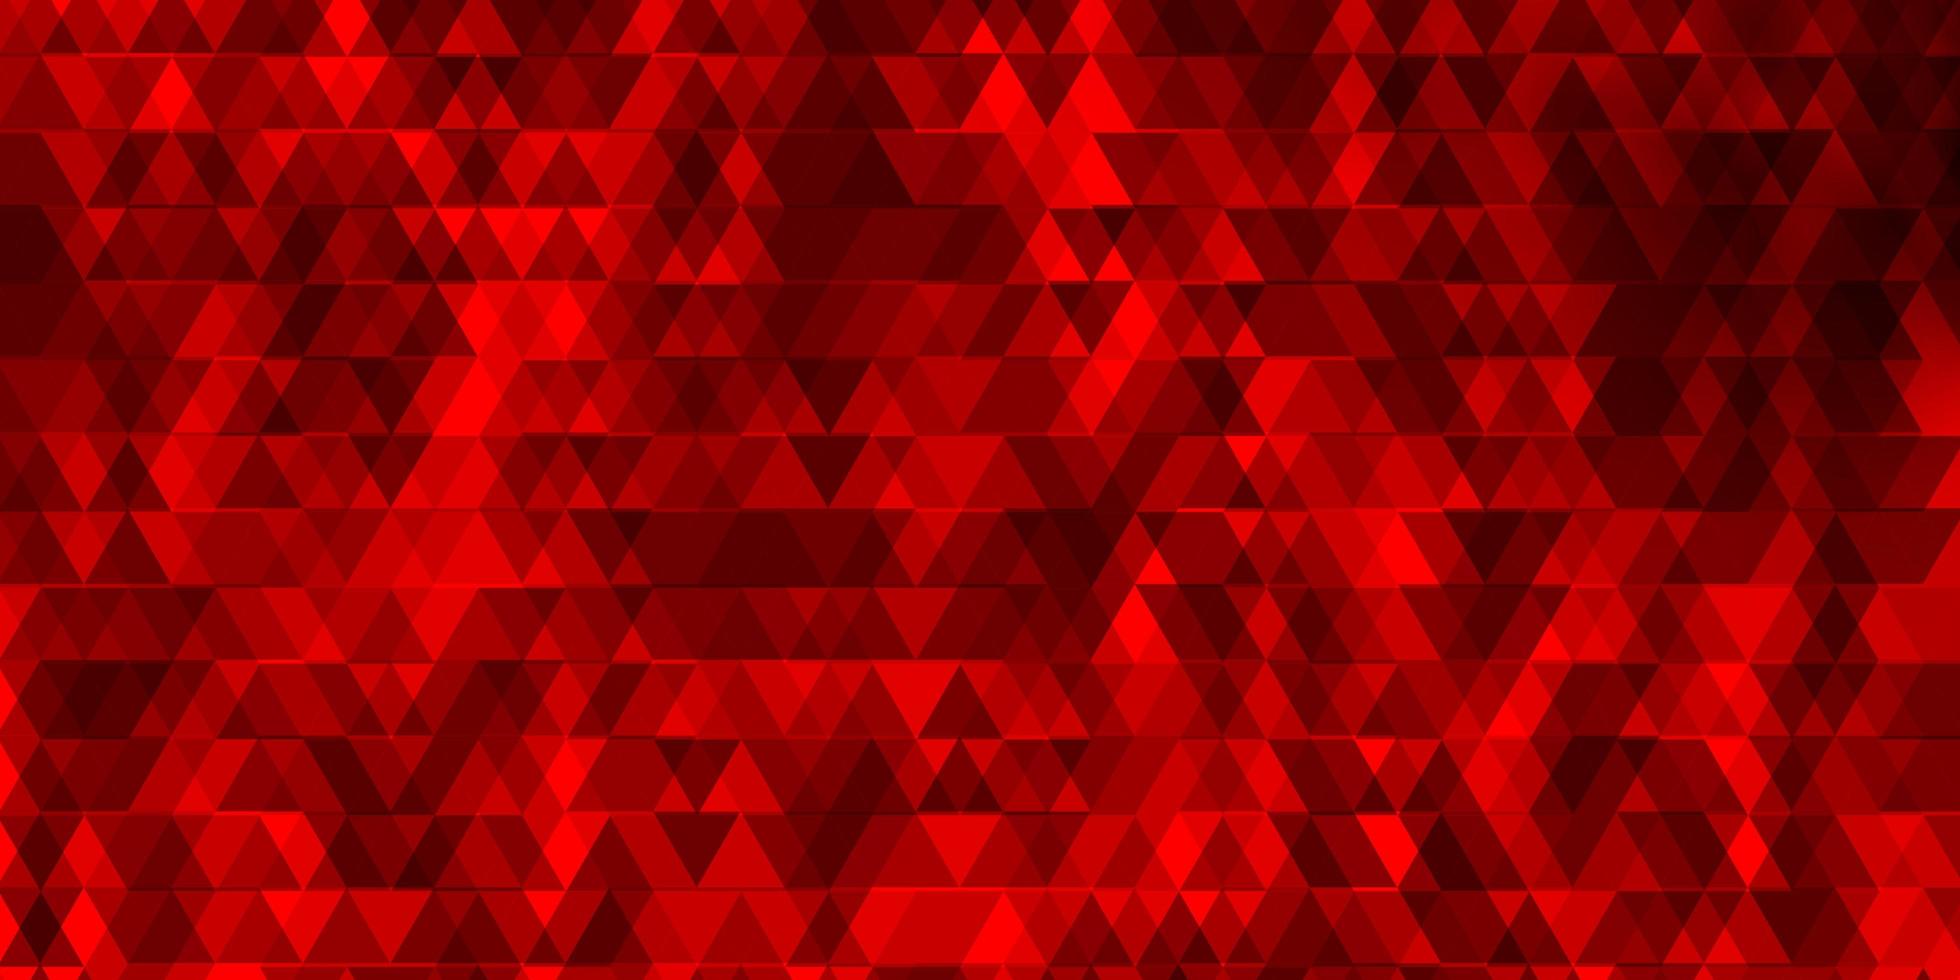 modelo de vetor vermelho claro com linhas, triângulos.